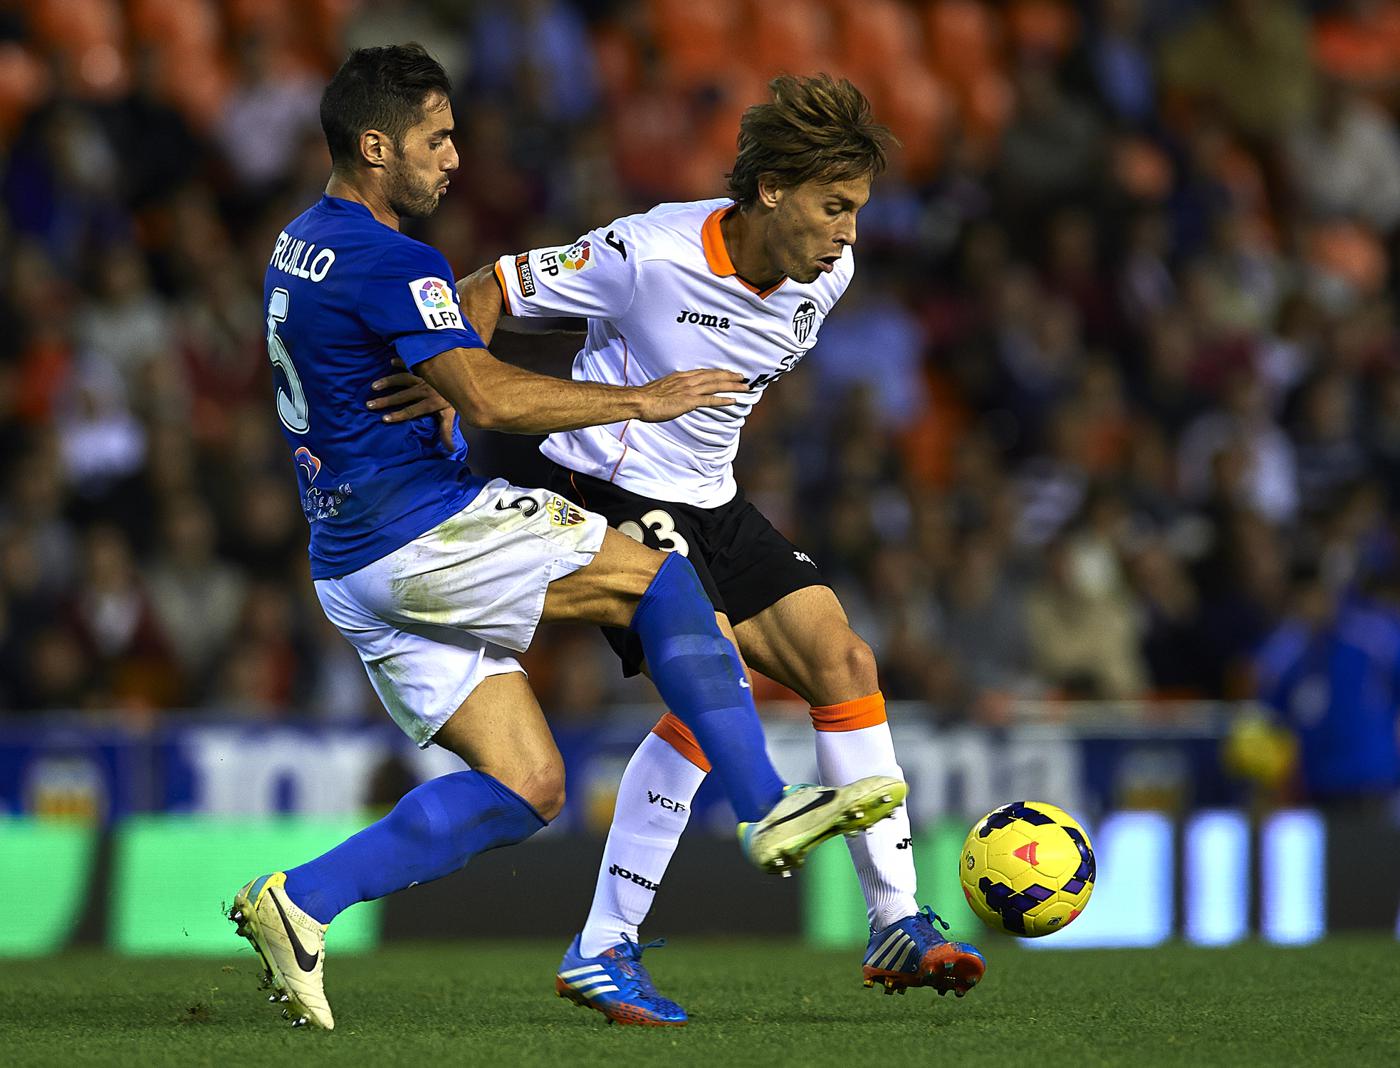 Almería - Valencia - 2:1. Spanische Meisterschaft, 28. Runde. Spielbericht, Statistiken